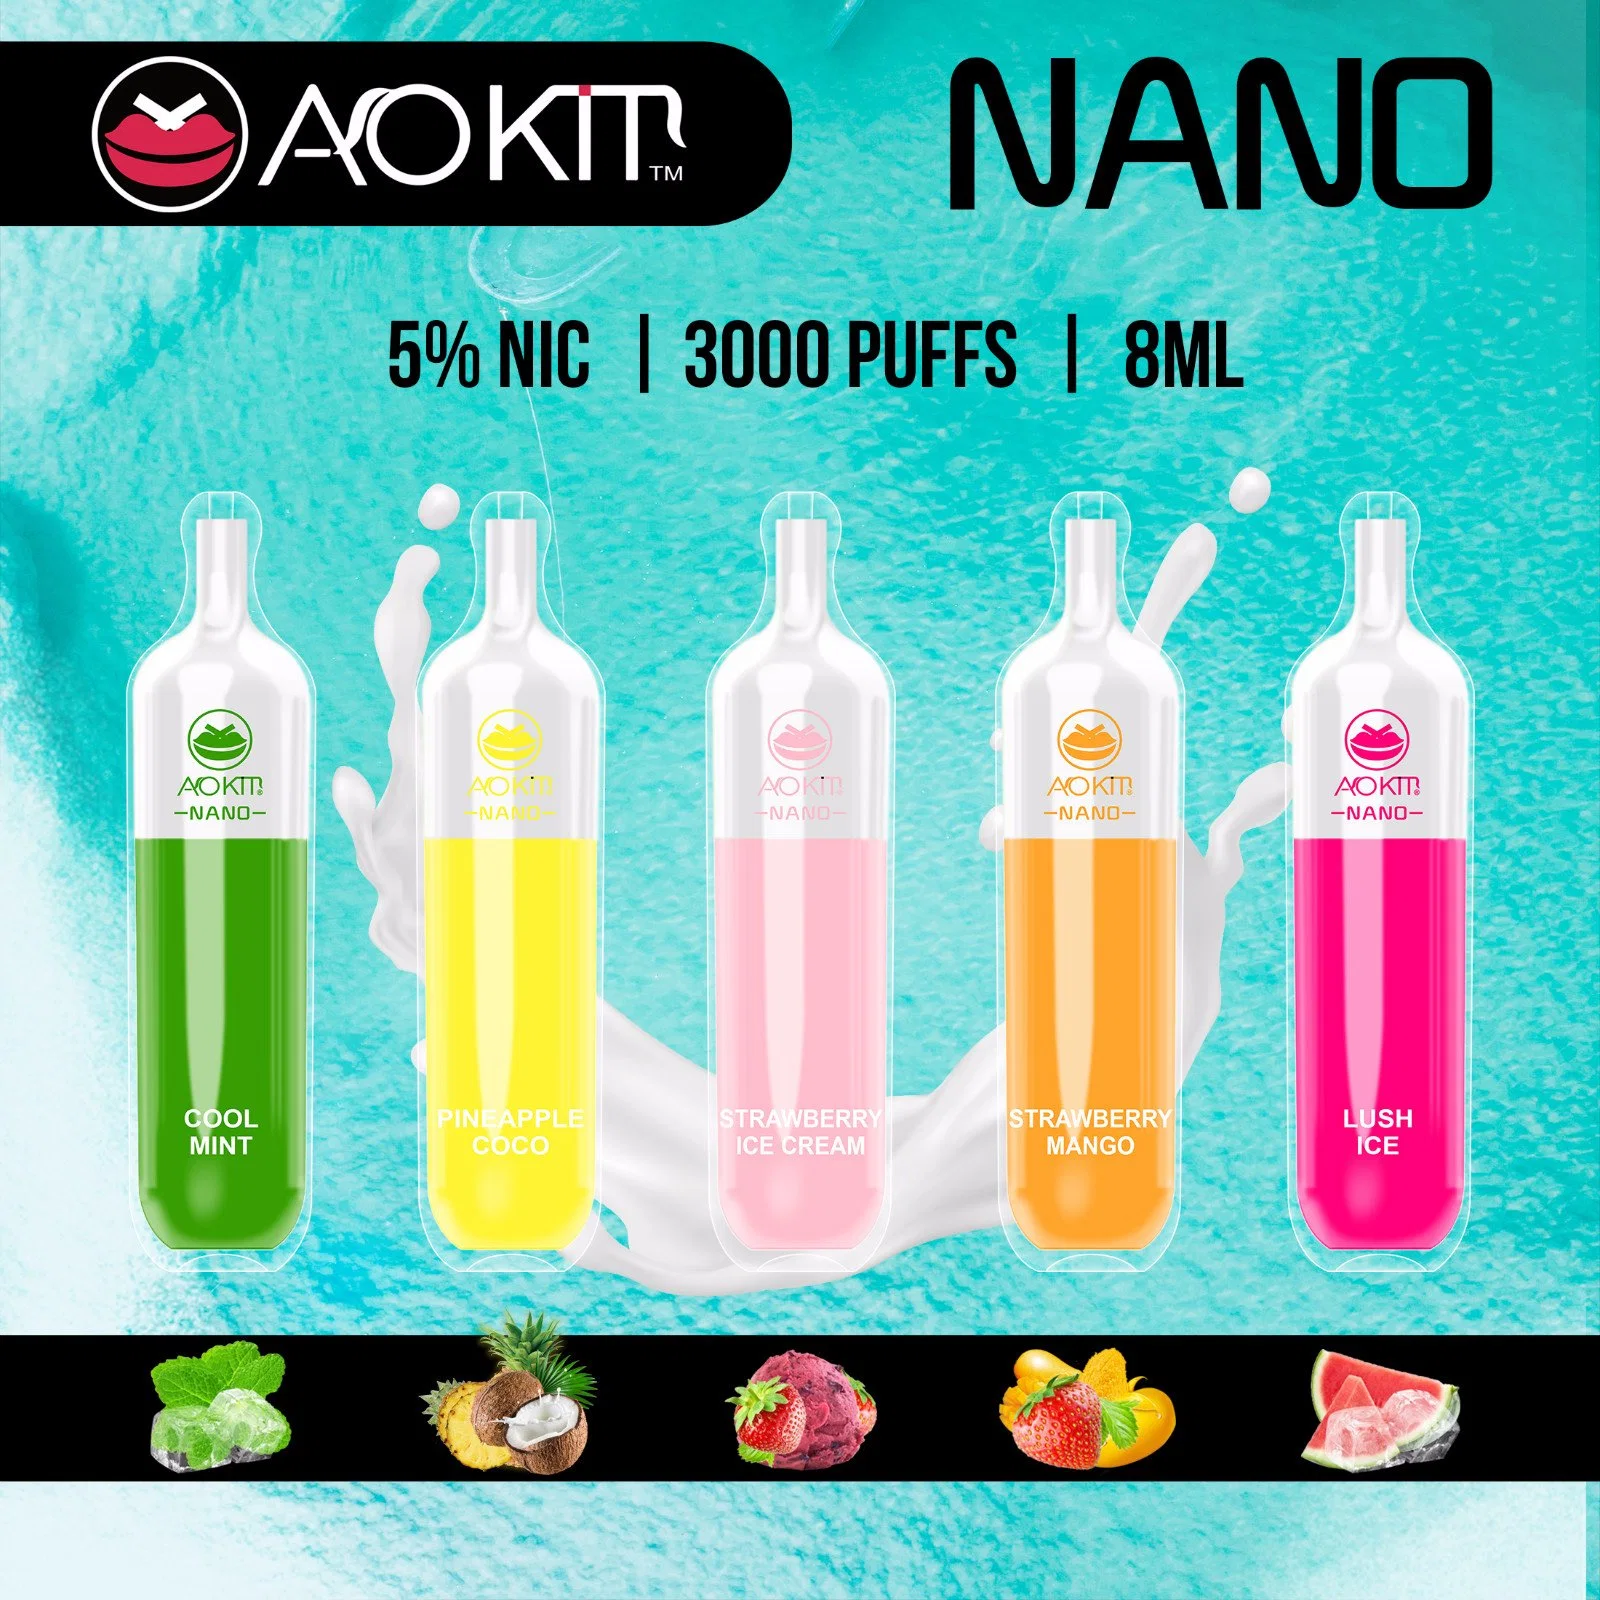 Usine Aokit direct des prix Nano 3000puff Nouveau modèle Vape stylo jetable OEM ODM Bienvenue